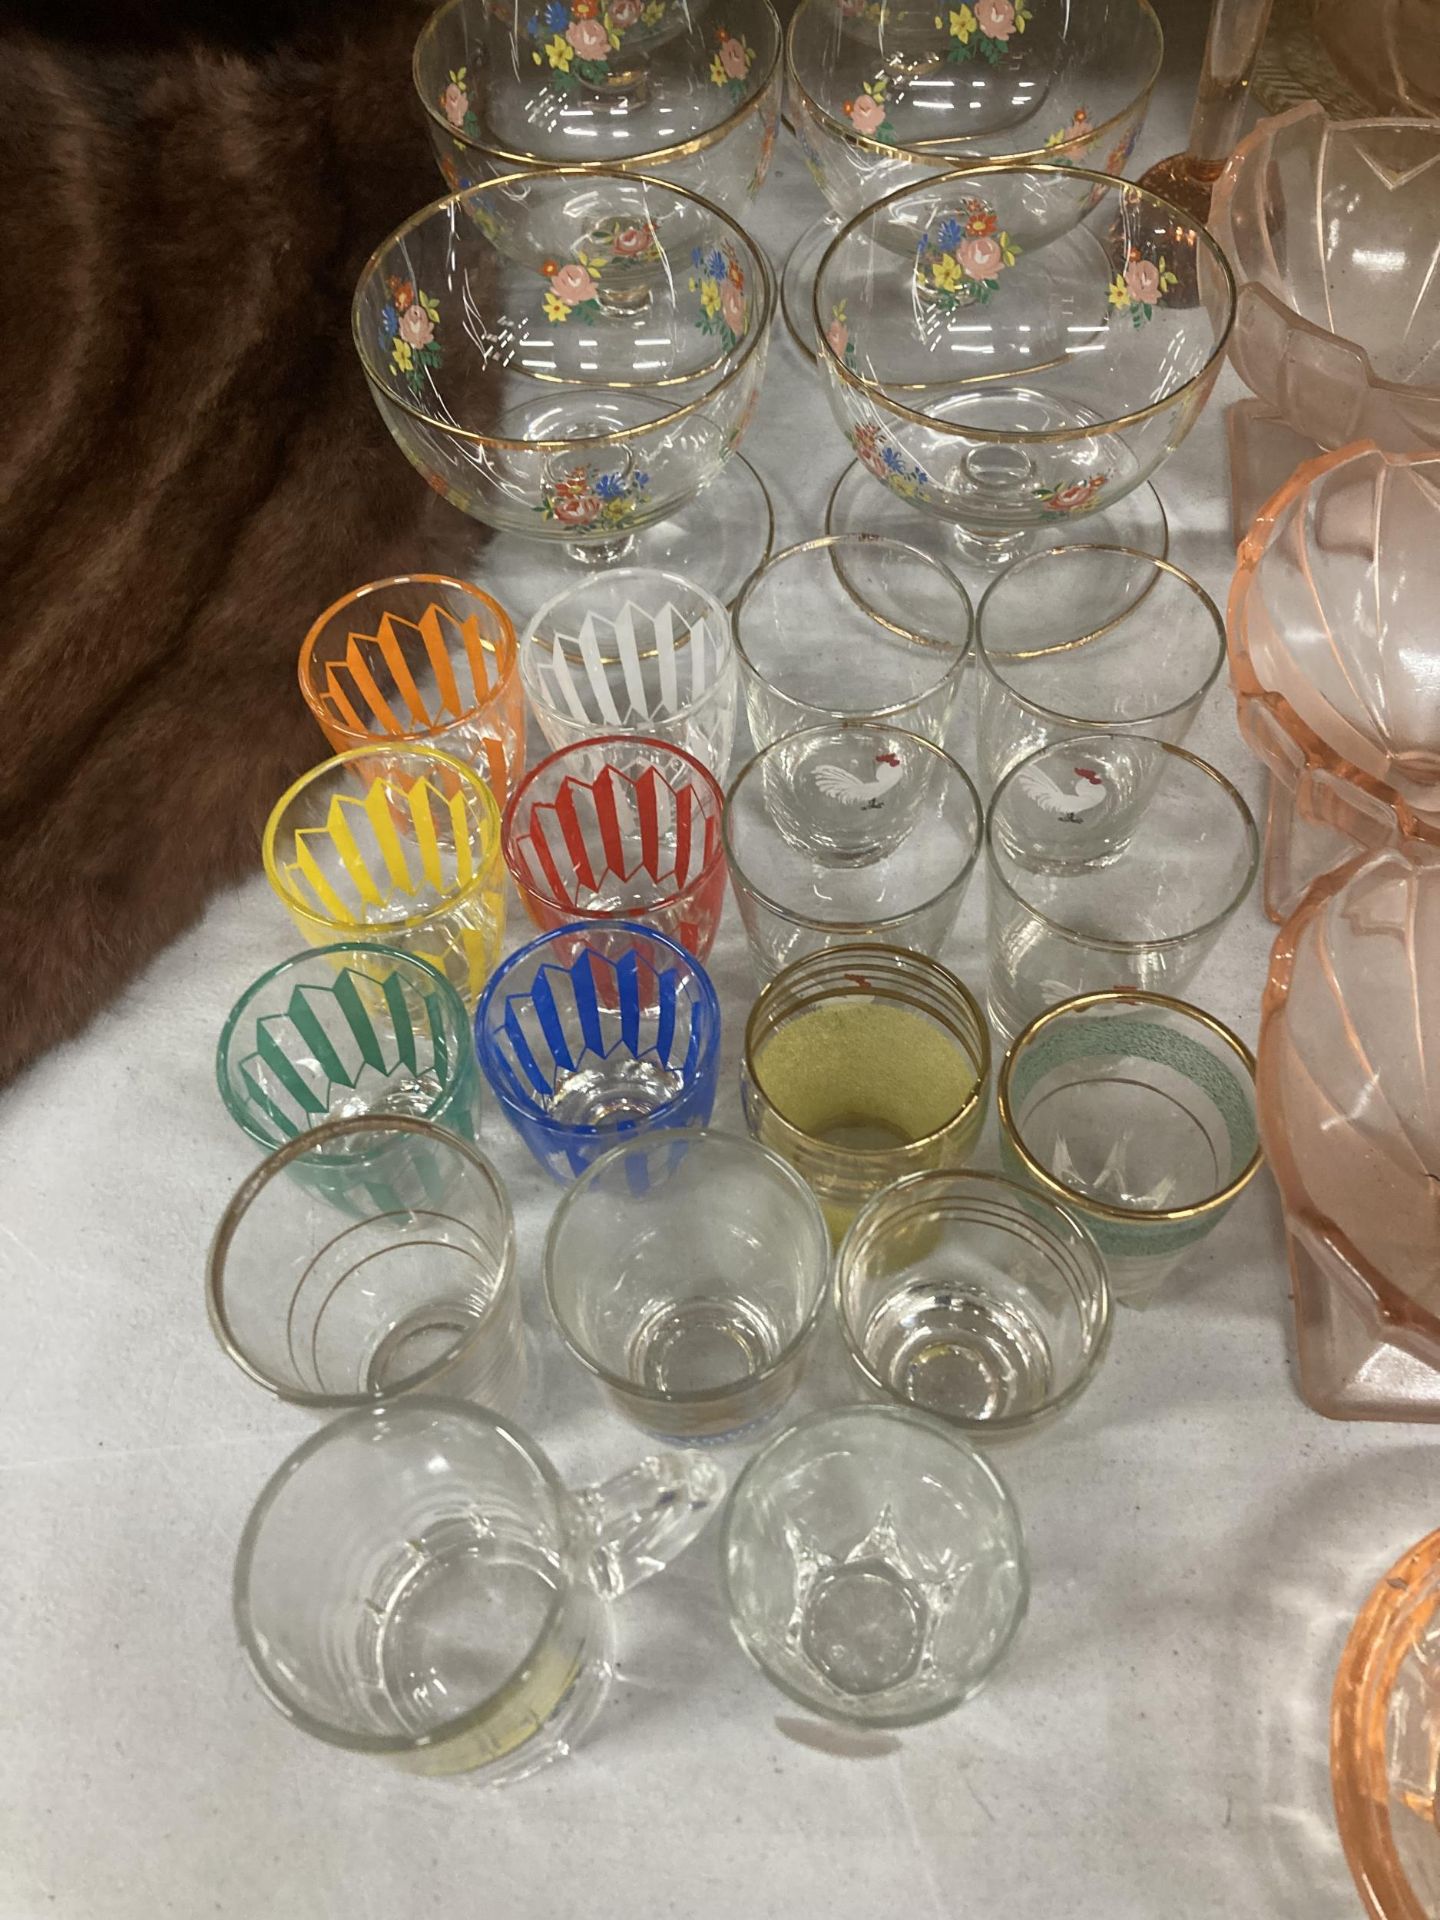 A QUANTITY OF VINTAGE GLASSWARE TO INCLUDE A TRIFLE BOWL, DESSERT BOWLS, SHOT GLASSES, ETC - Bild 2 aus 5